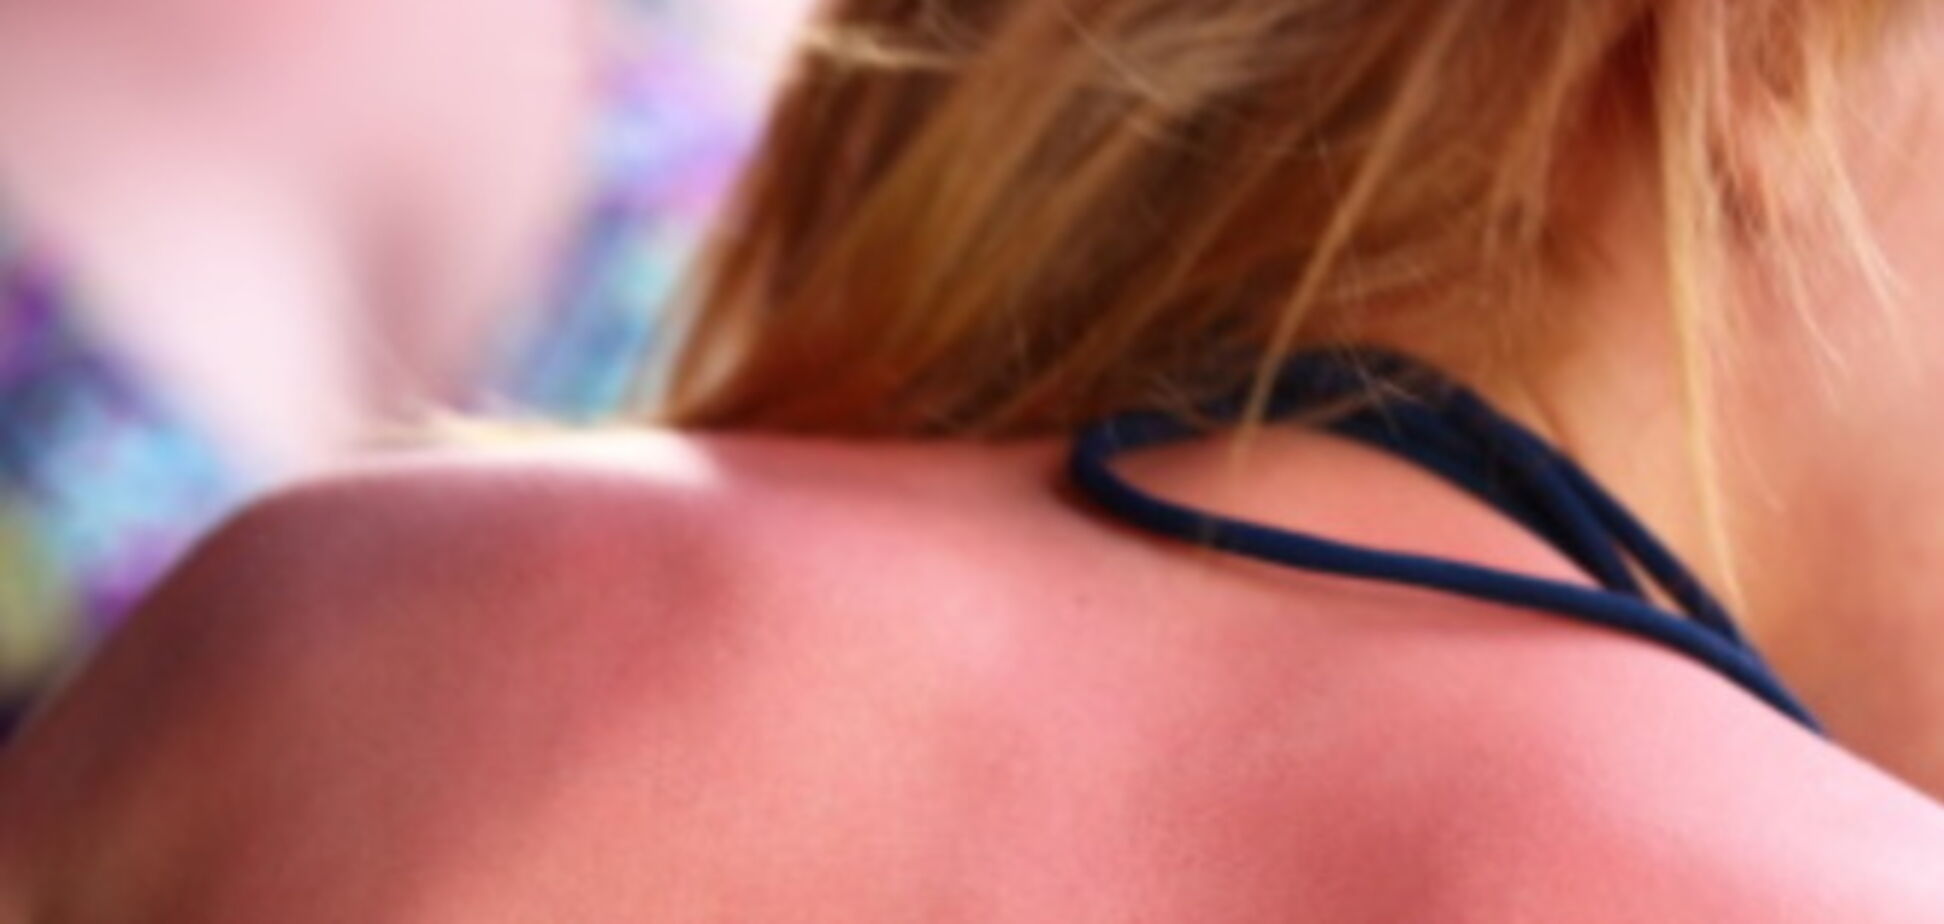 5 солнечных ожогов обеспечат рак кожи